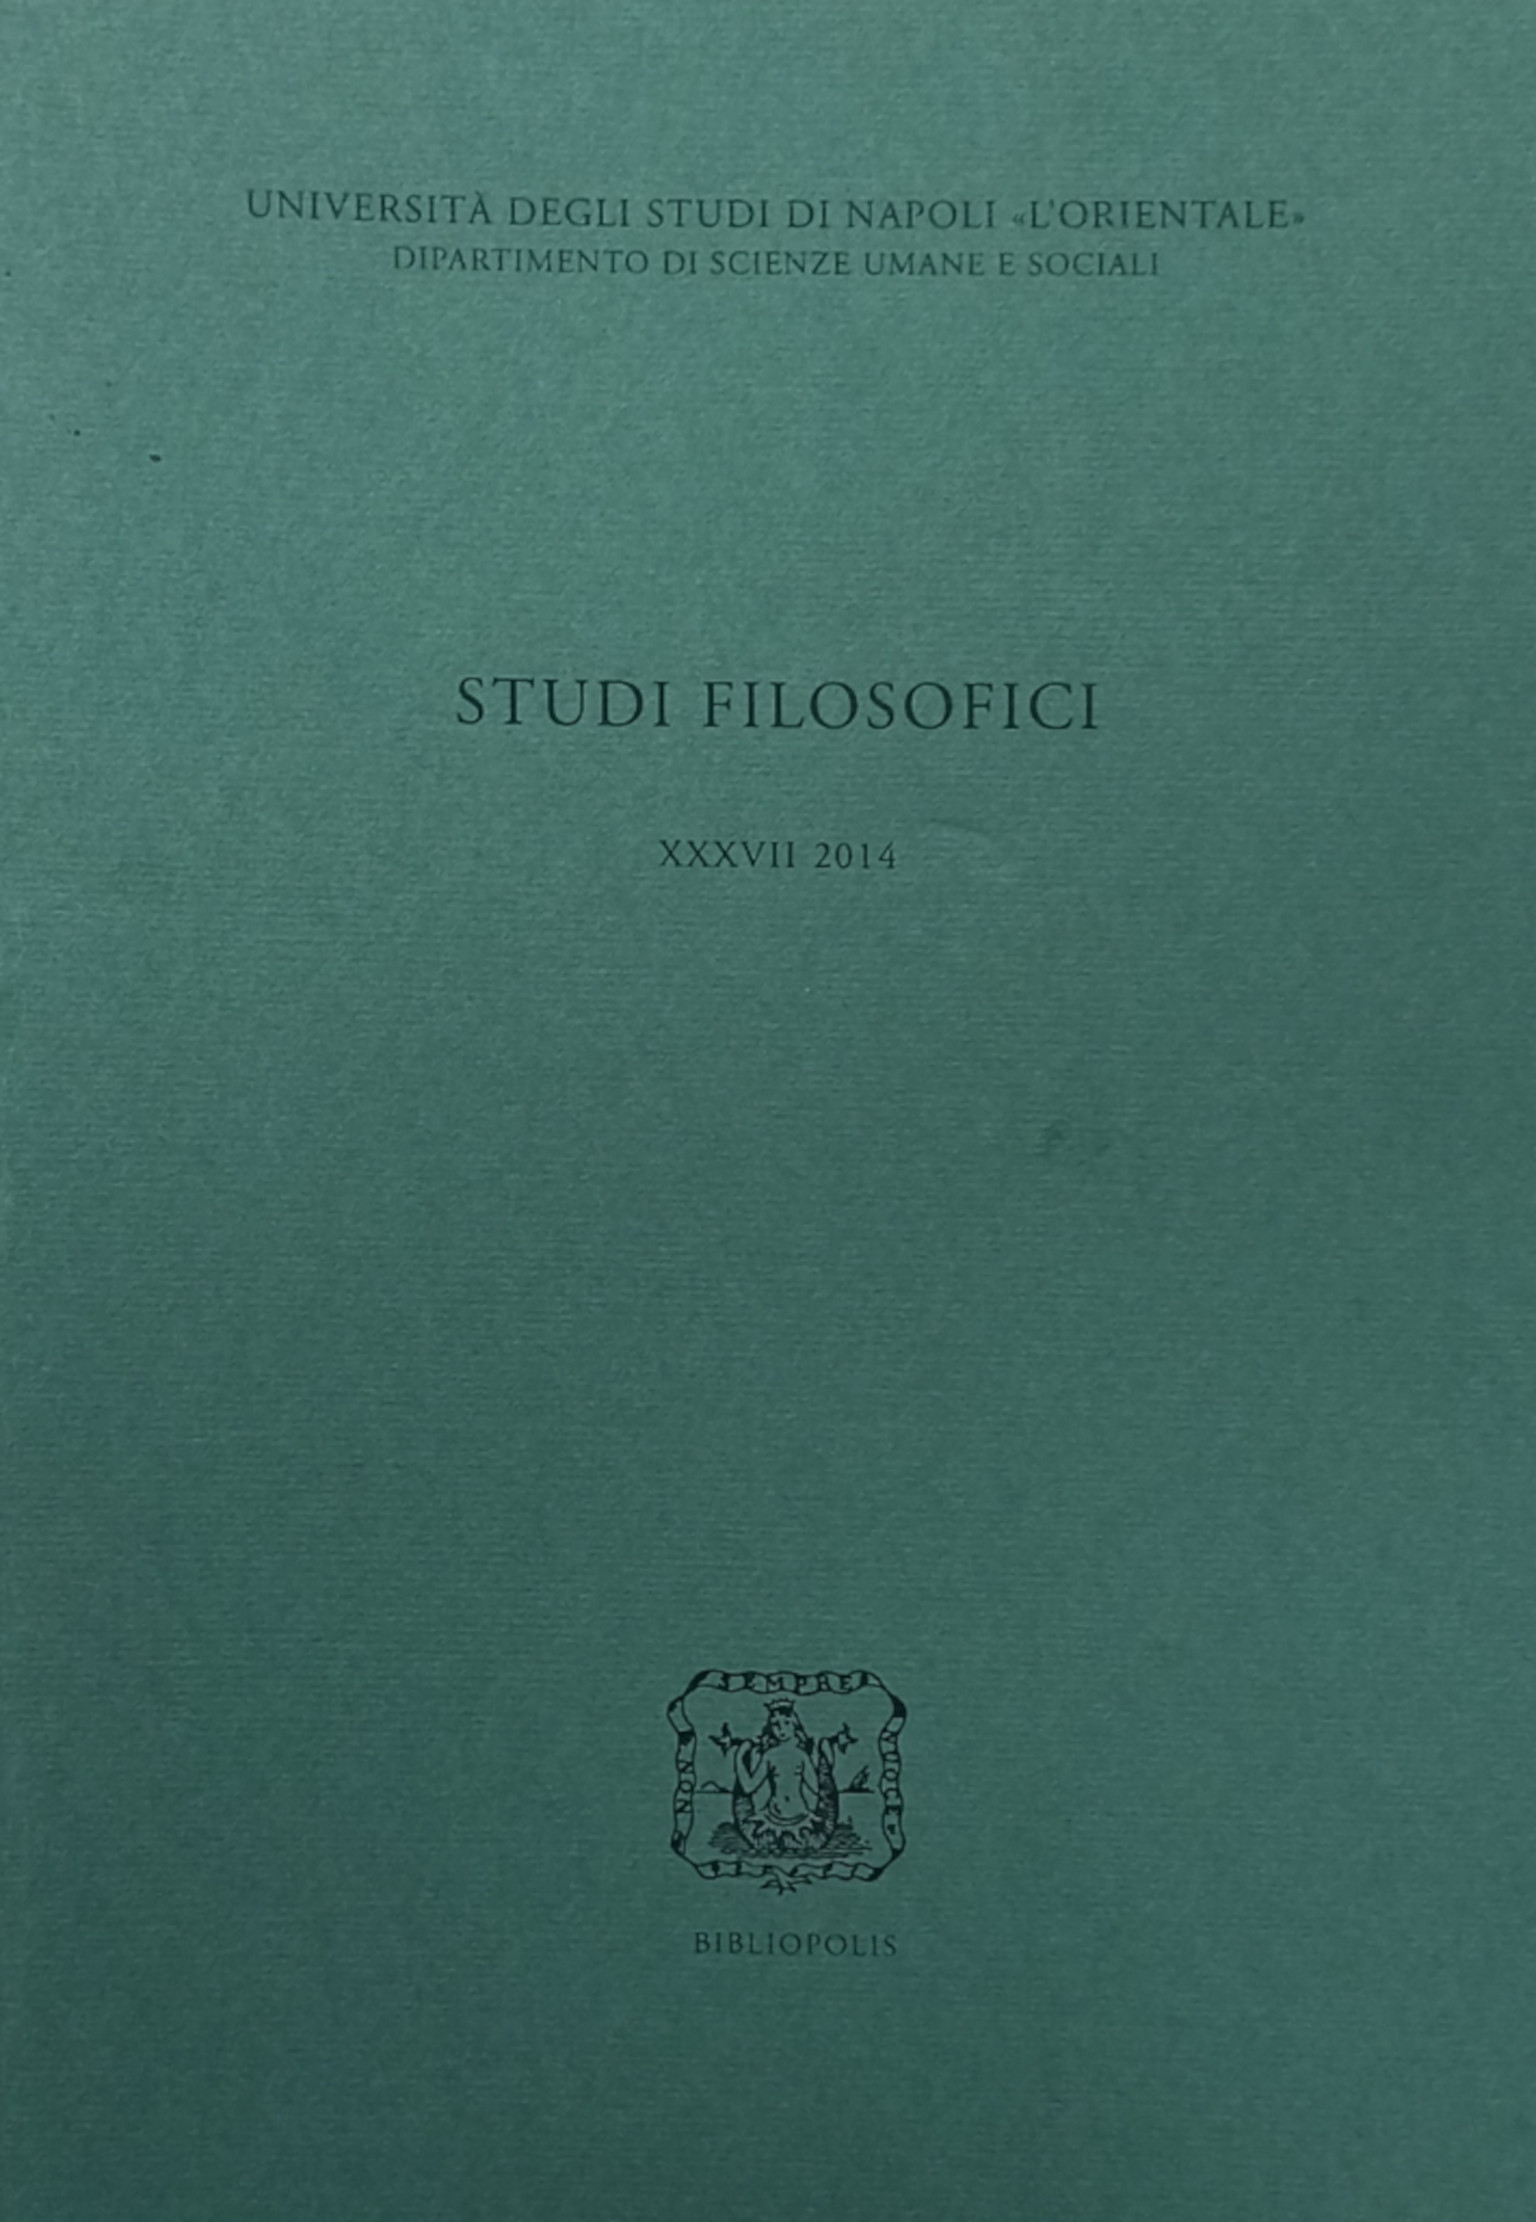 Philosophische Studien XXXVII 2014